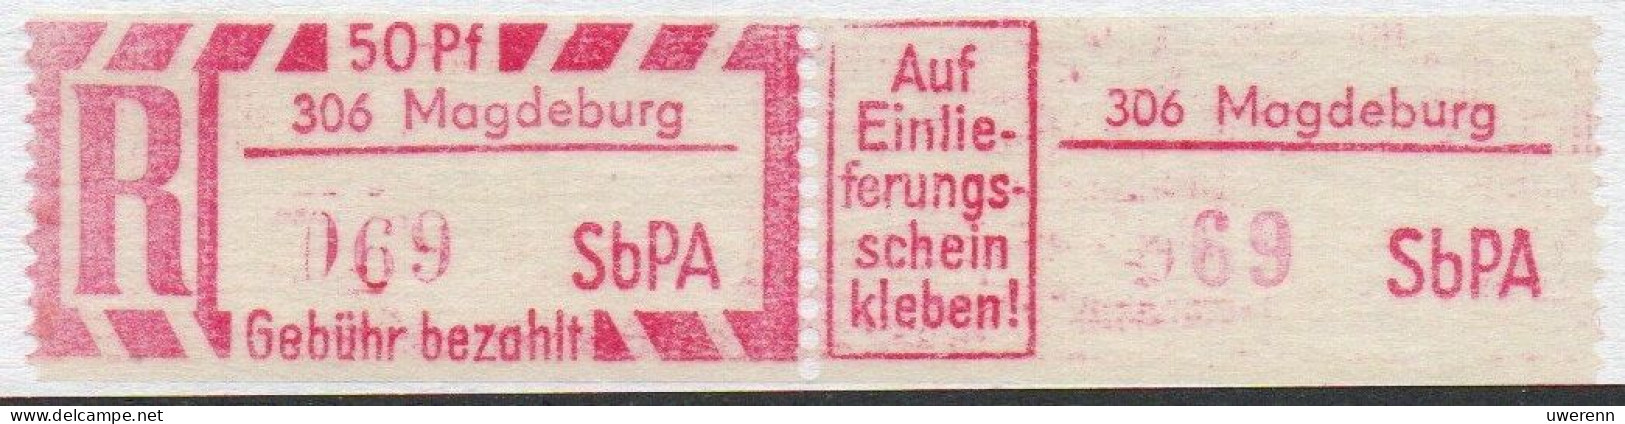 DDR Einschreibemarke Magdeburg SbPA Postfrisch, EM2B-306II(1) PU- RU(a) Zh - R-Zettel